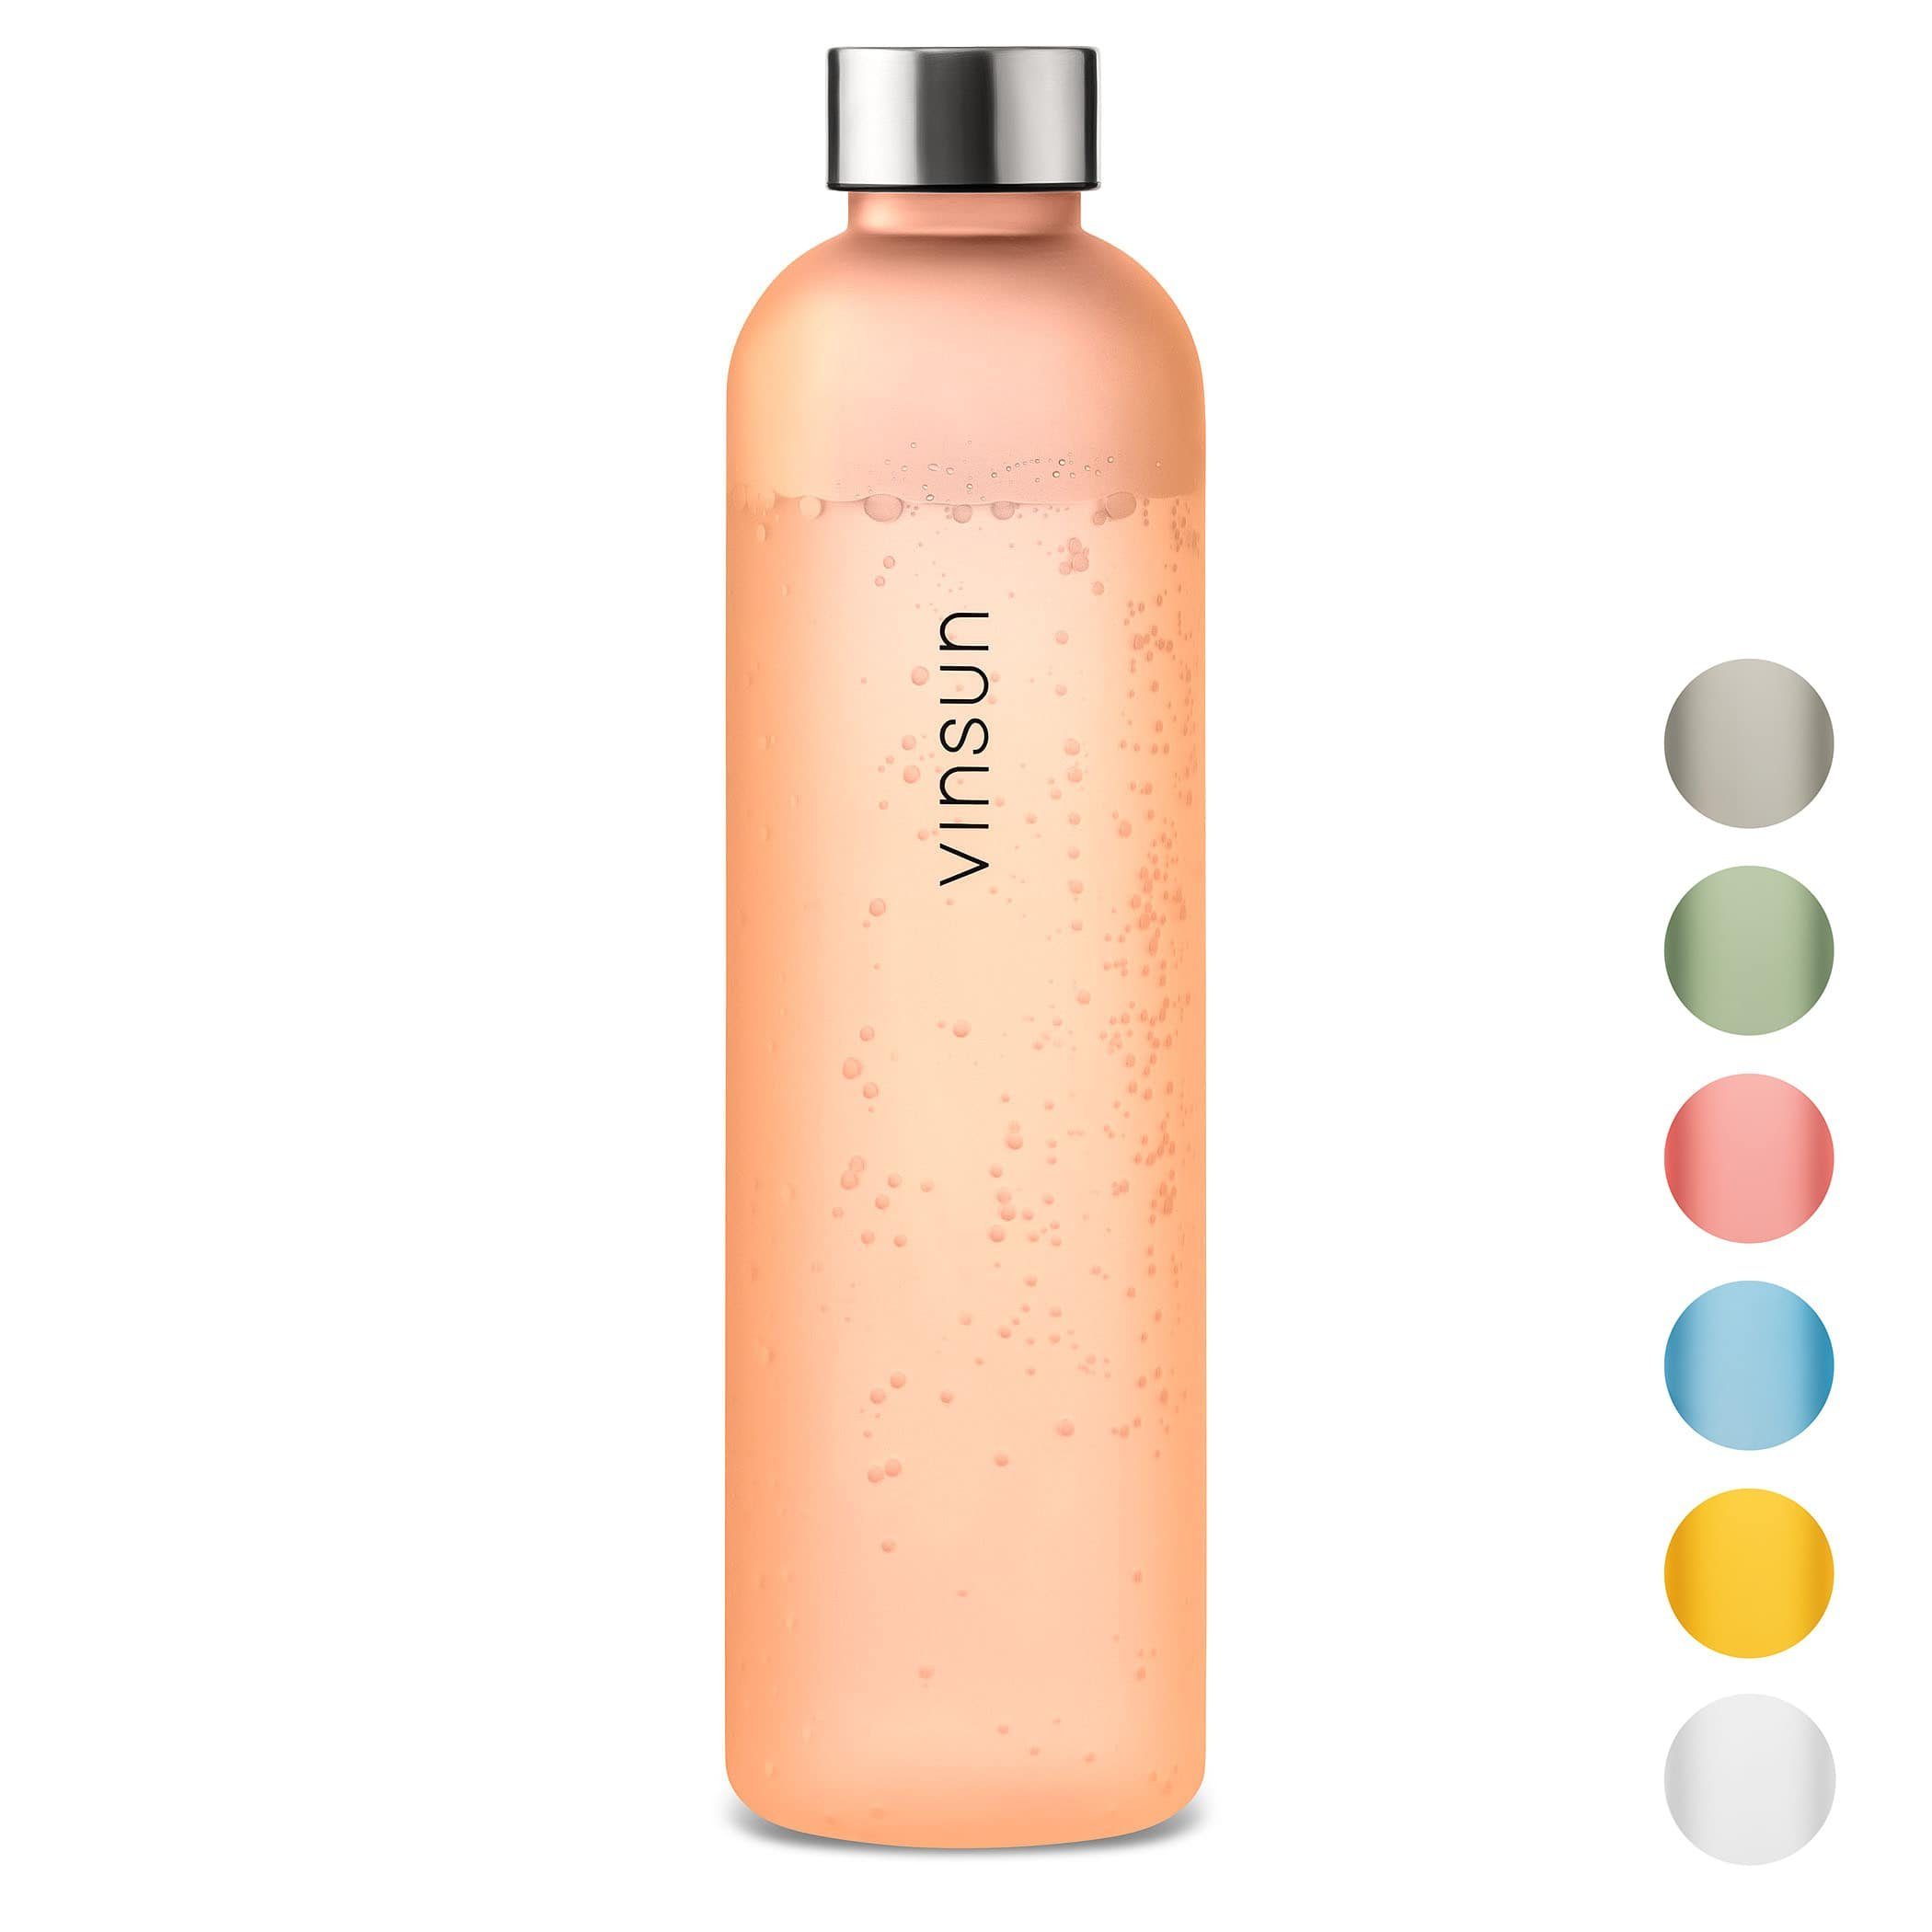 Vinsun Trinkflasche Trinkflasche 1L - Kohlensäure geeignet - Orange Transparent, BPA frei, bruchsicher, Geruchs- und Geschmacksneutral, auslaufsicher